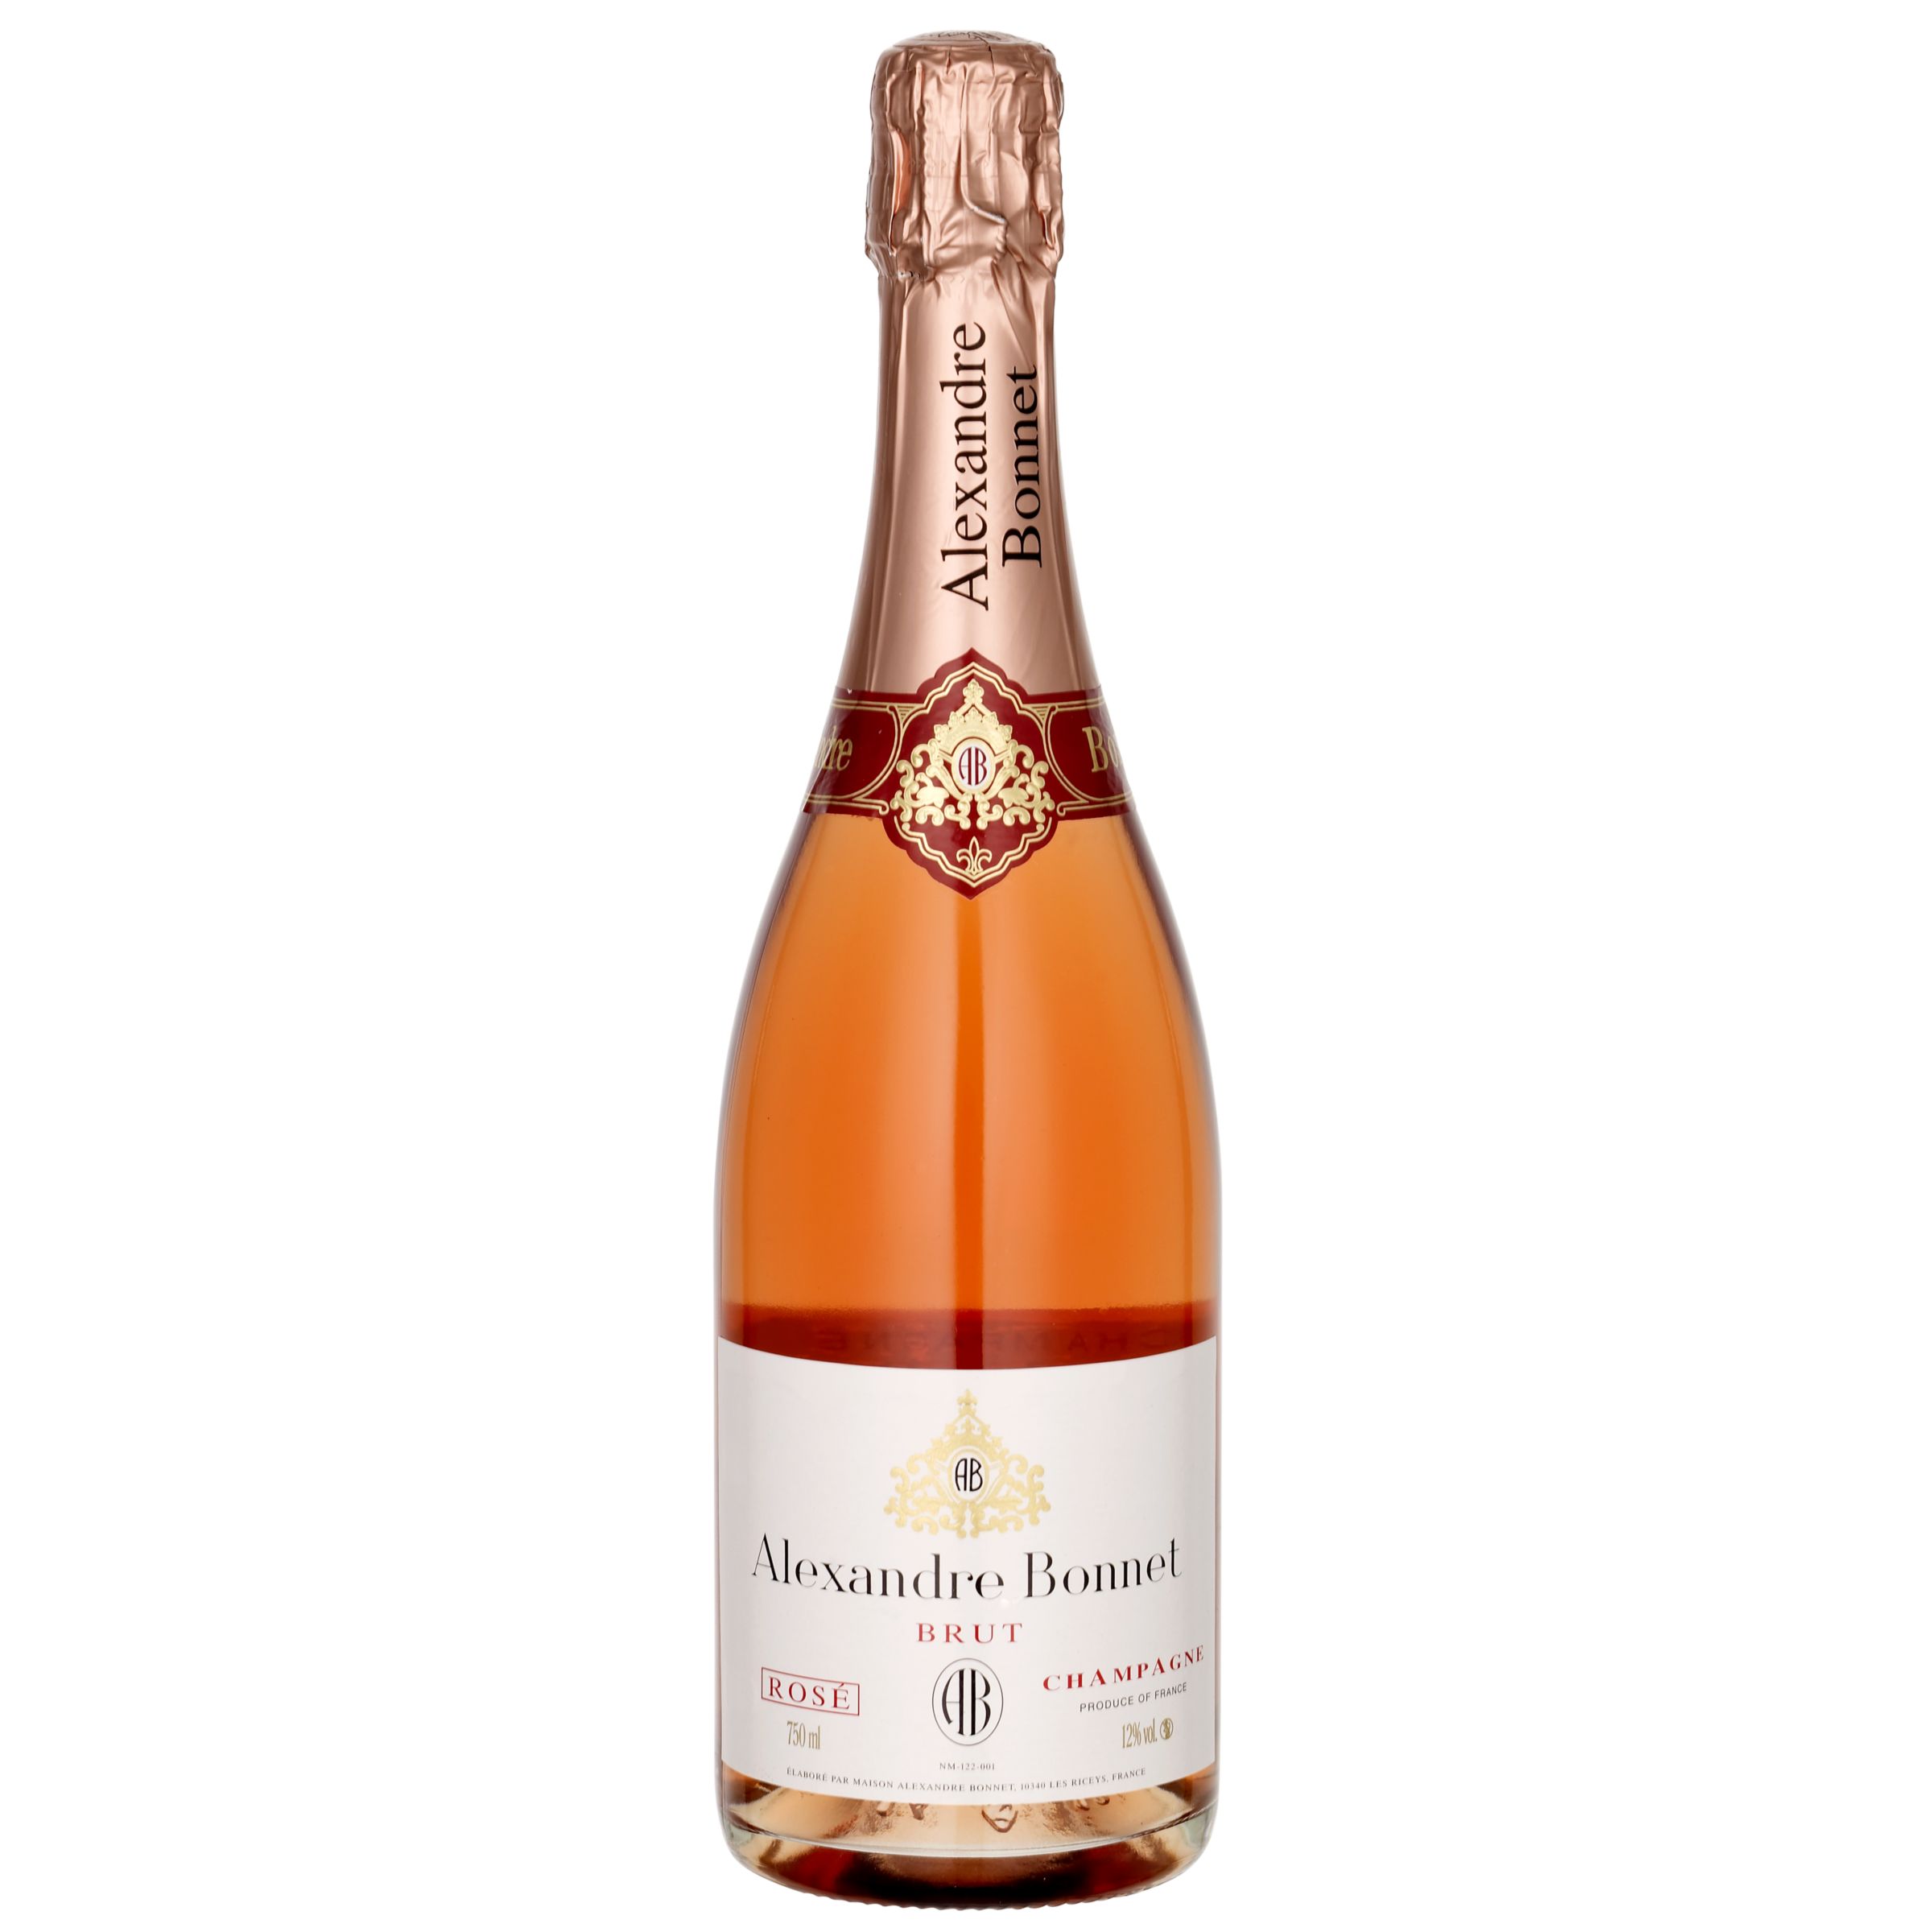 Alexandre Bonnet Brut Rosé NV Champagne, France at John Lewis